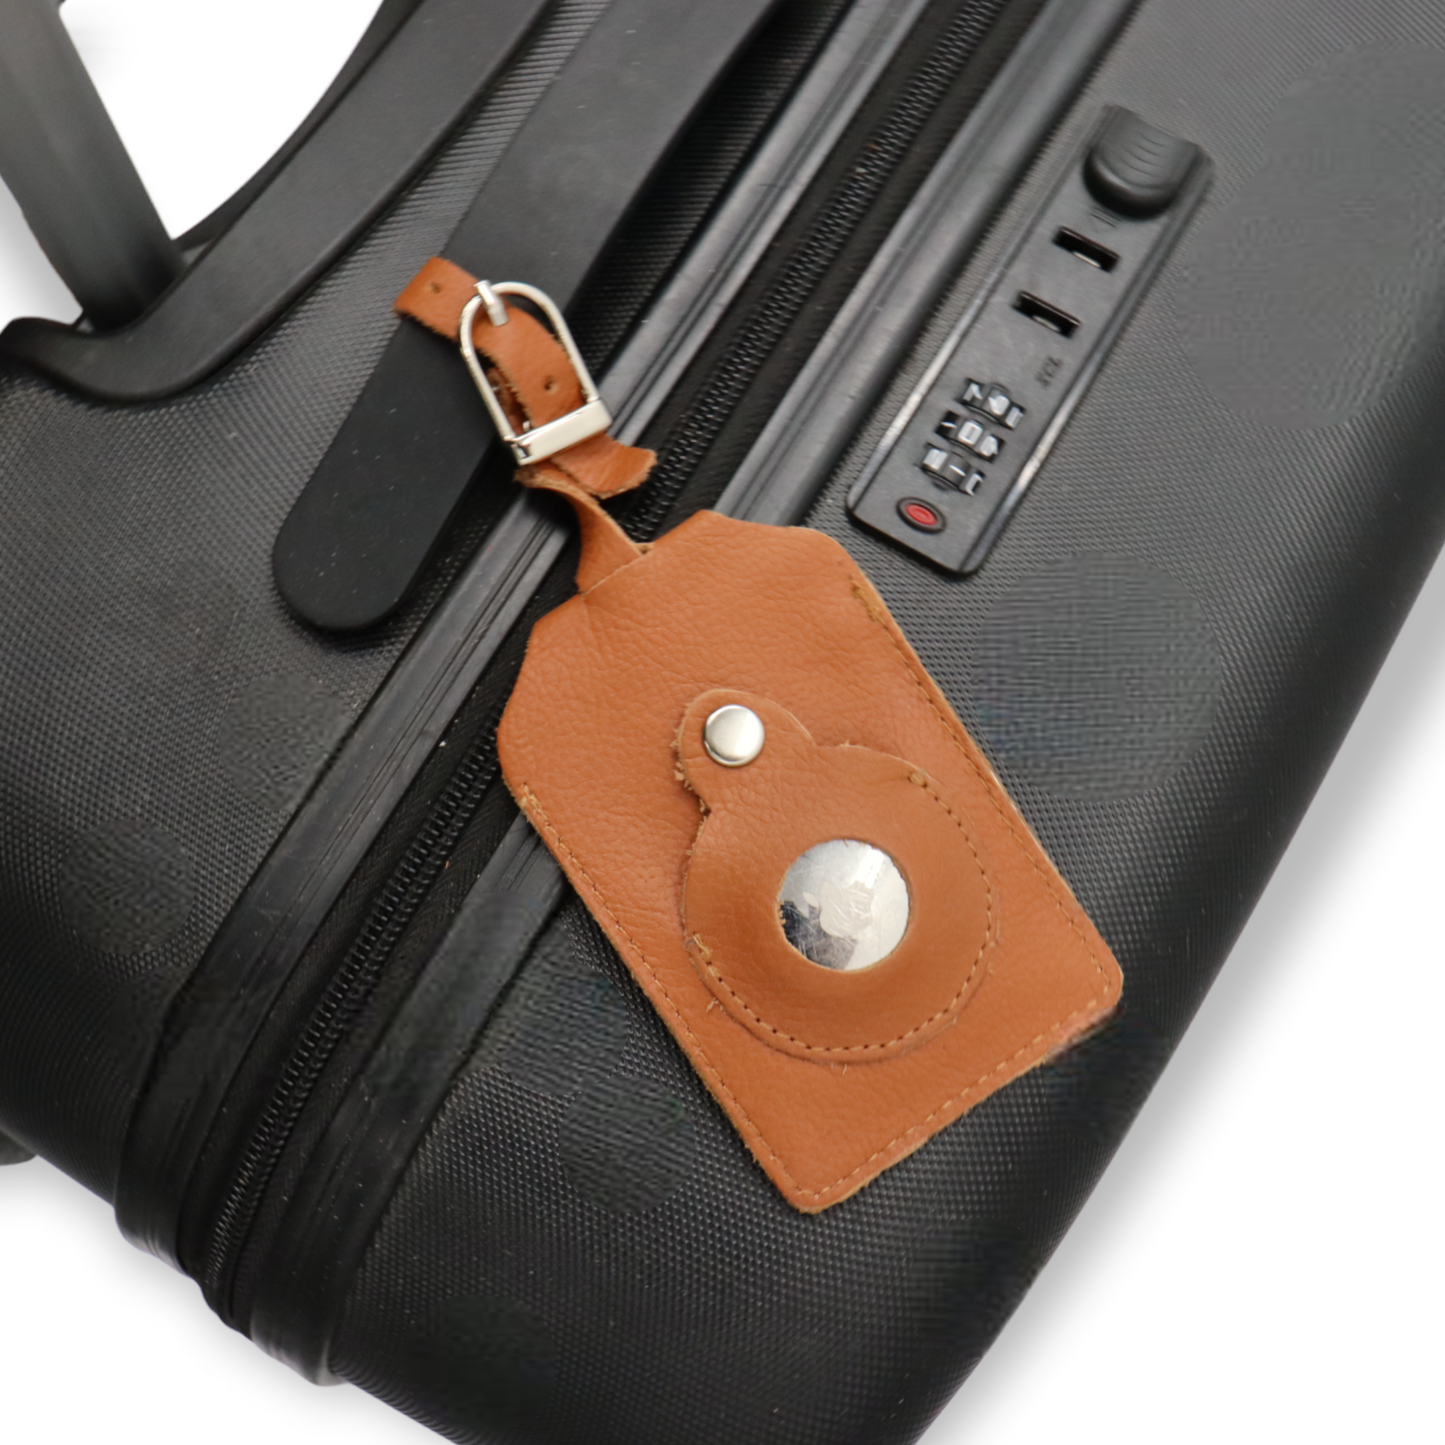 Safekeepers Kofferanhänger - 2 stück Gepäckanhänger mit Adressschild - Platz für Airtag - Echtes Leder -Kofferanhänger mit Adressschild, Tags mit Namensschild zum Erkennen Ihrer Reisetasche